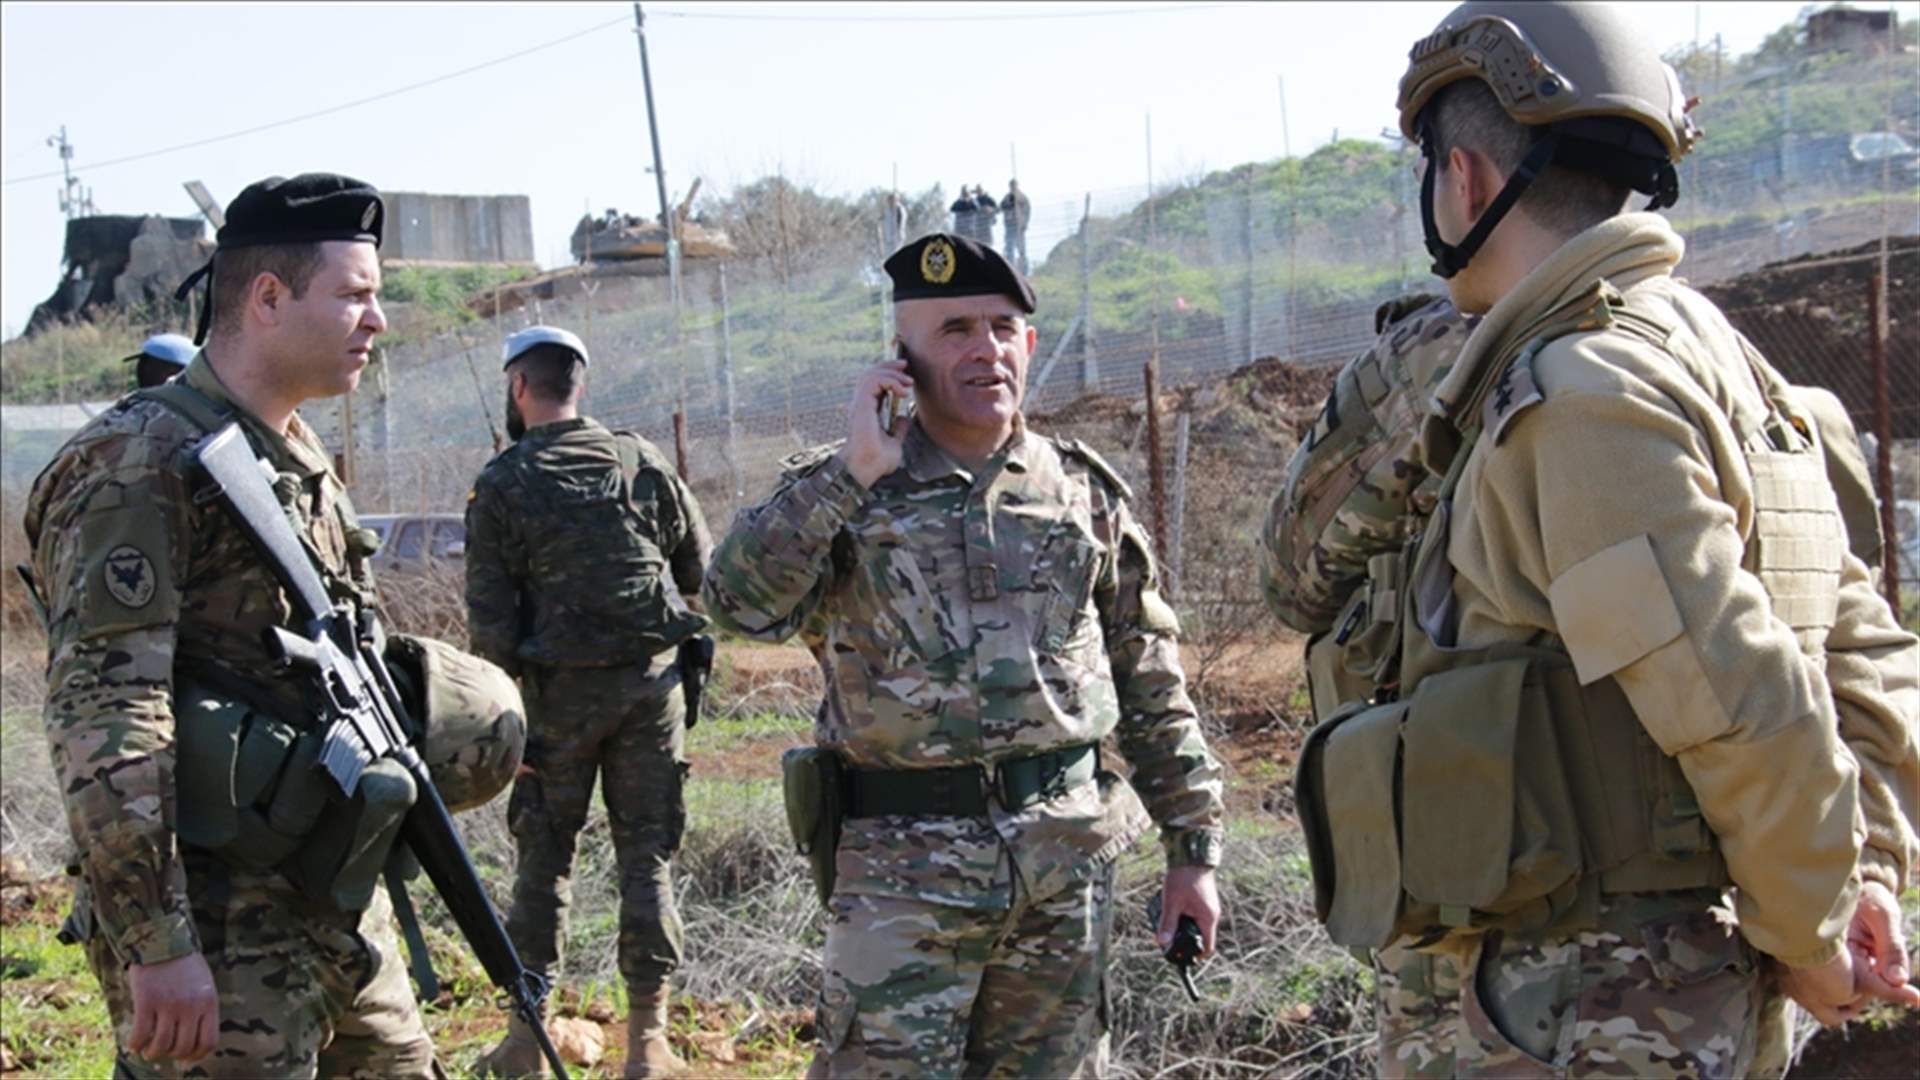 الجيش الاسرائيلي: التهديد على الحدود اللبنانية انخفض بشكل كبير لكن الوضع متفجر